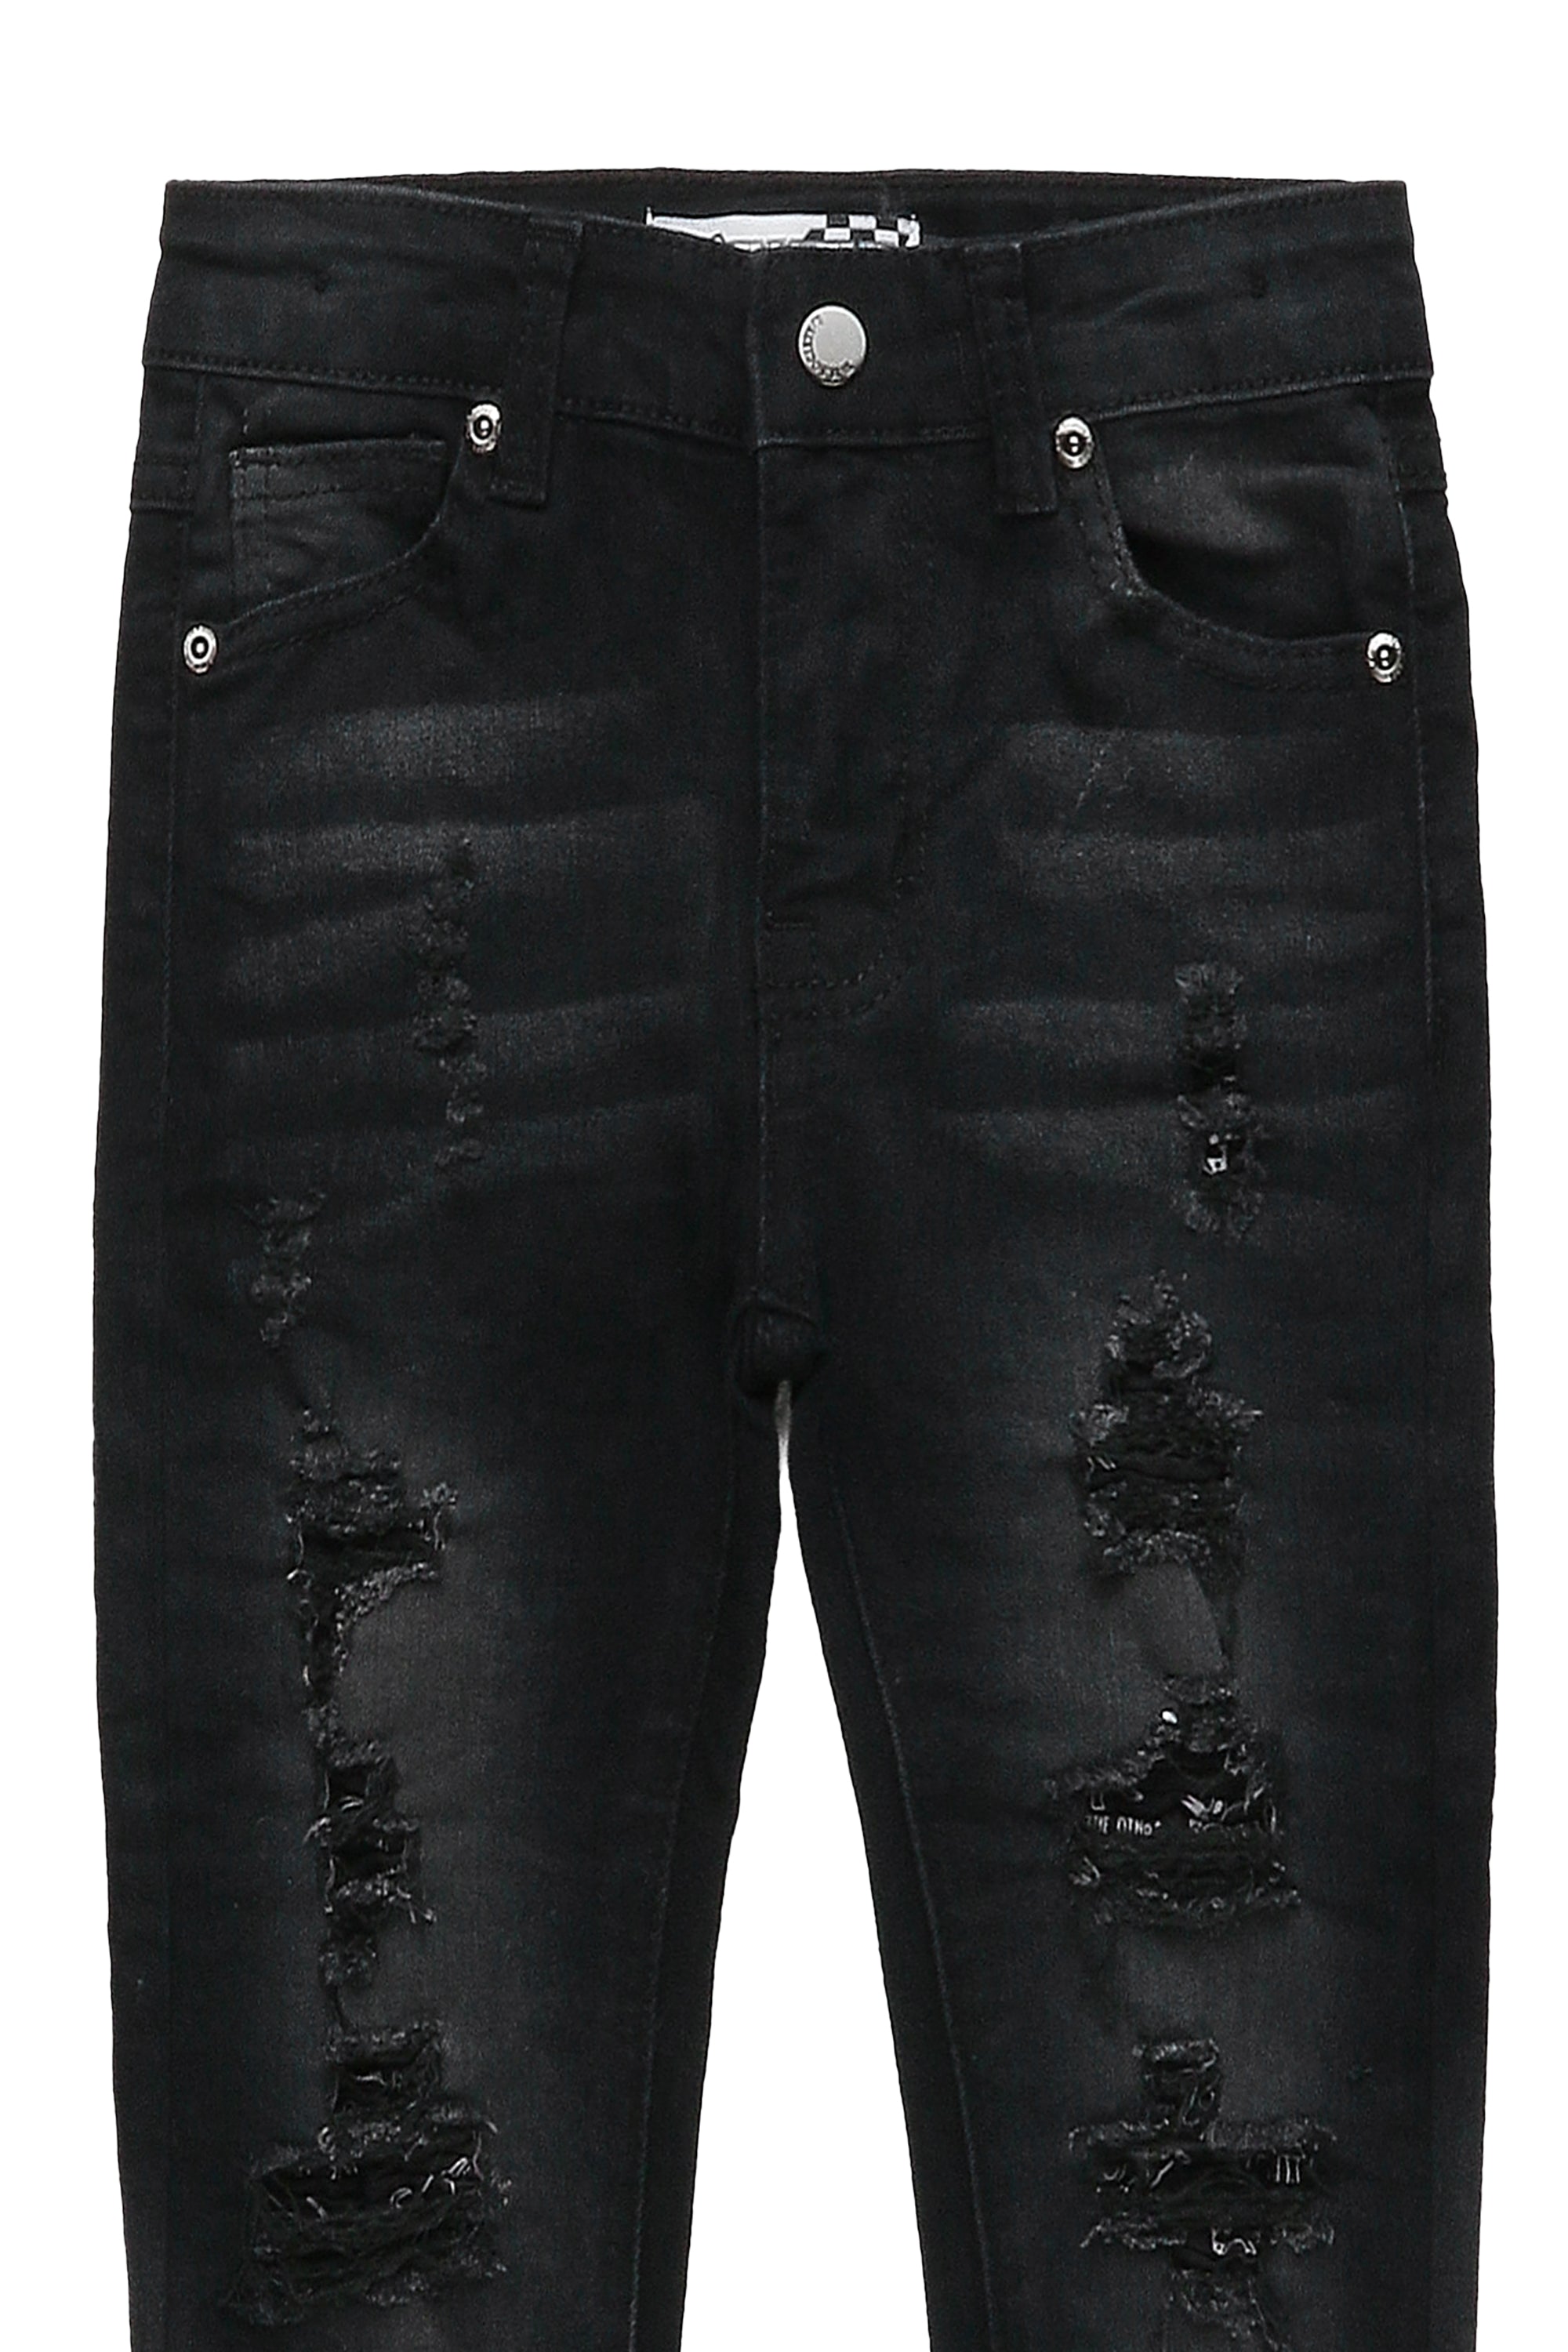 Boys Noel Black 5 Pocket Jean